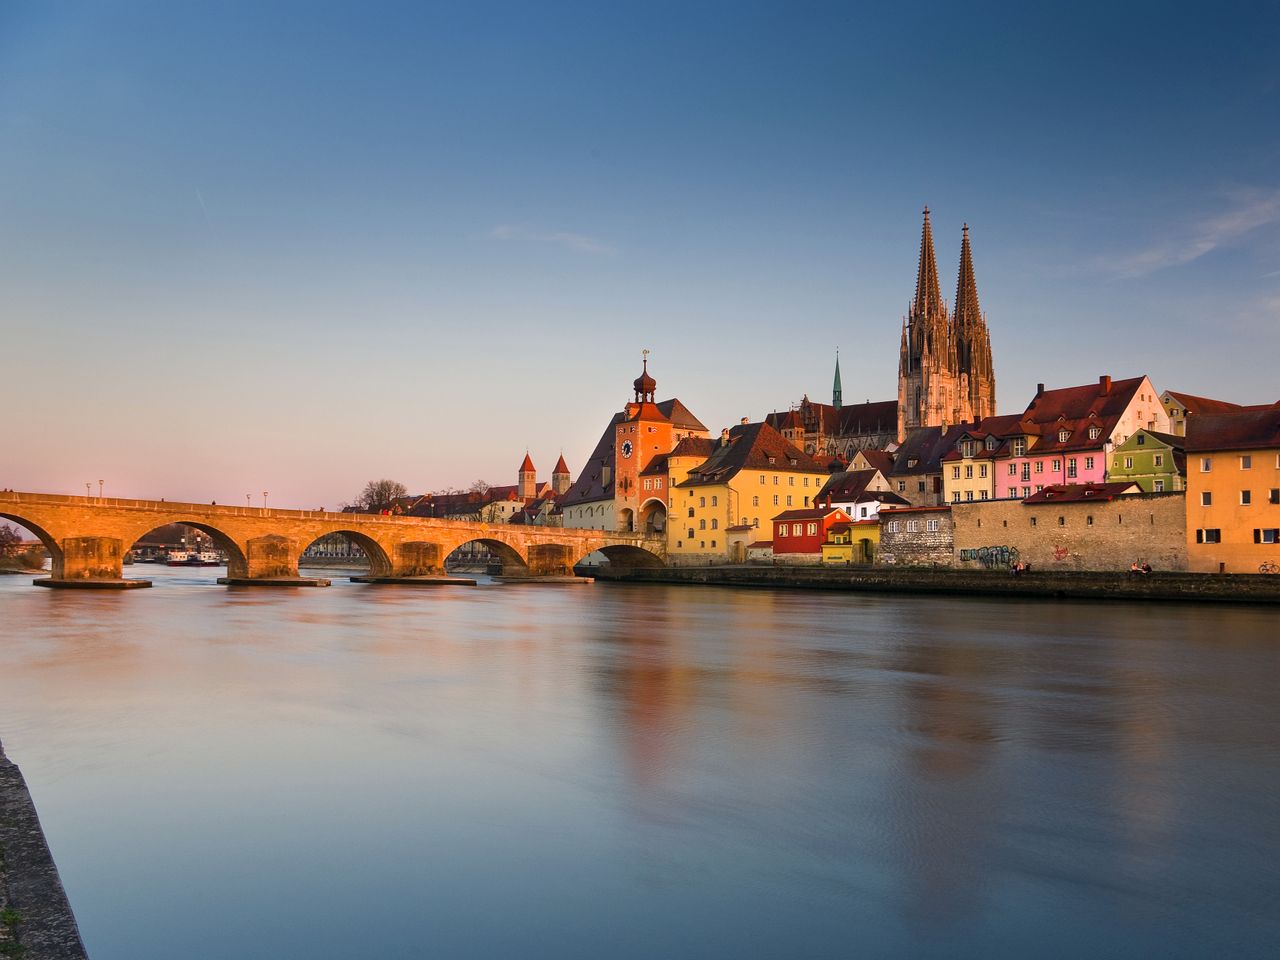 Strudelfahrt auf der Donau - 4 Tage in Regensburg